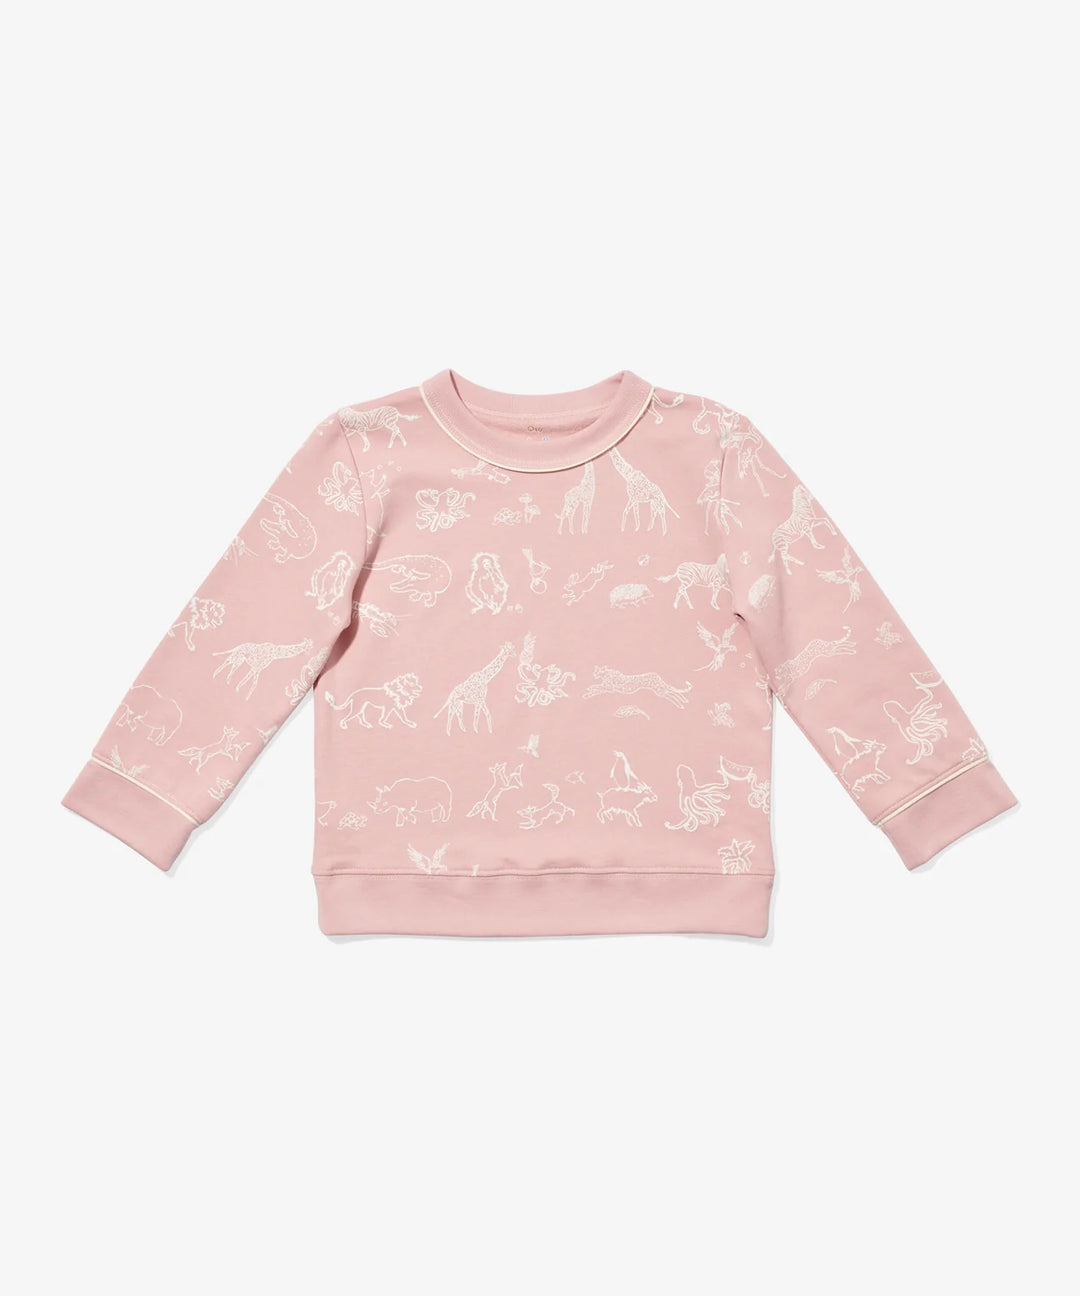 Remy Sweatshirt, Rose Animal Parade